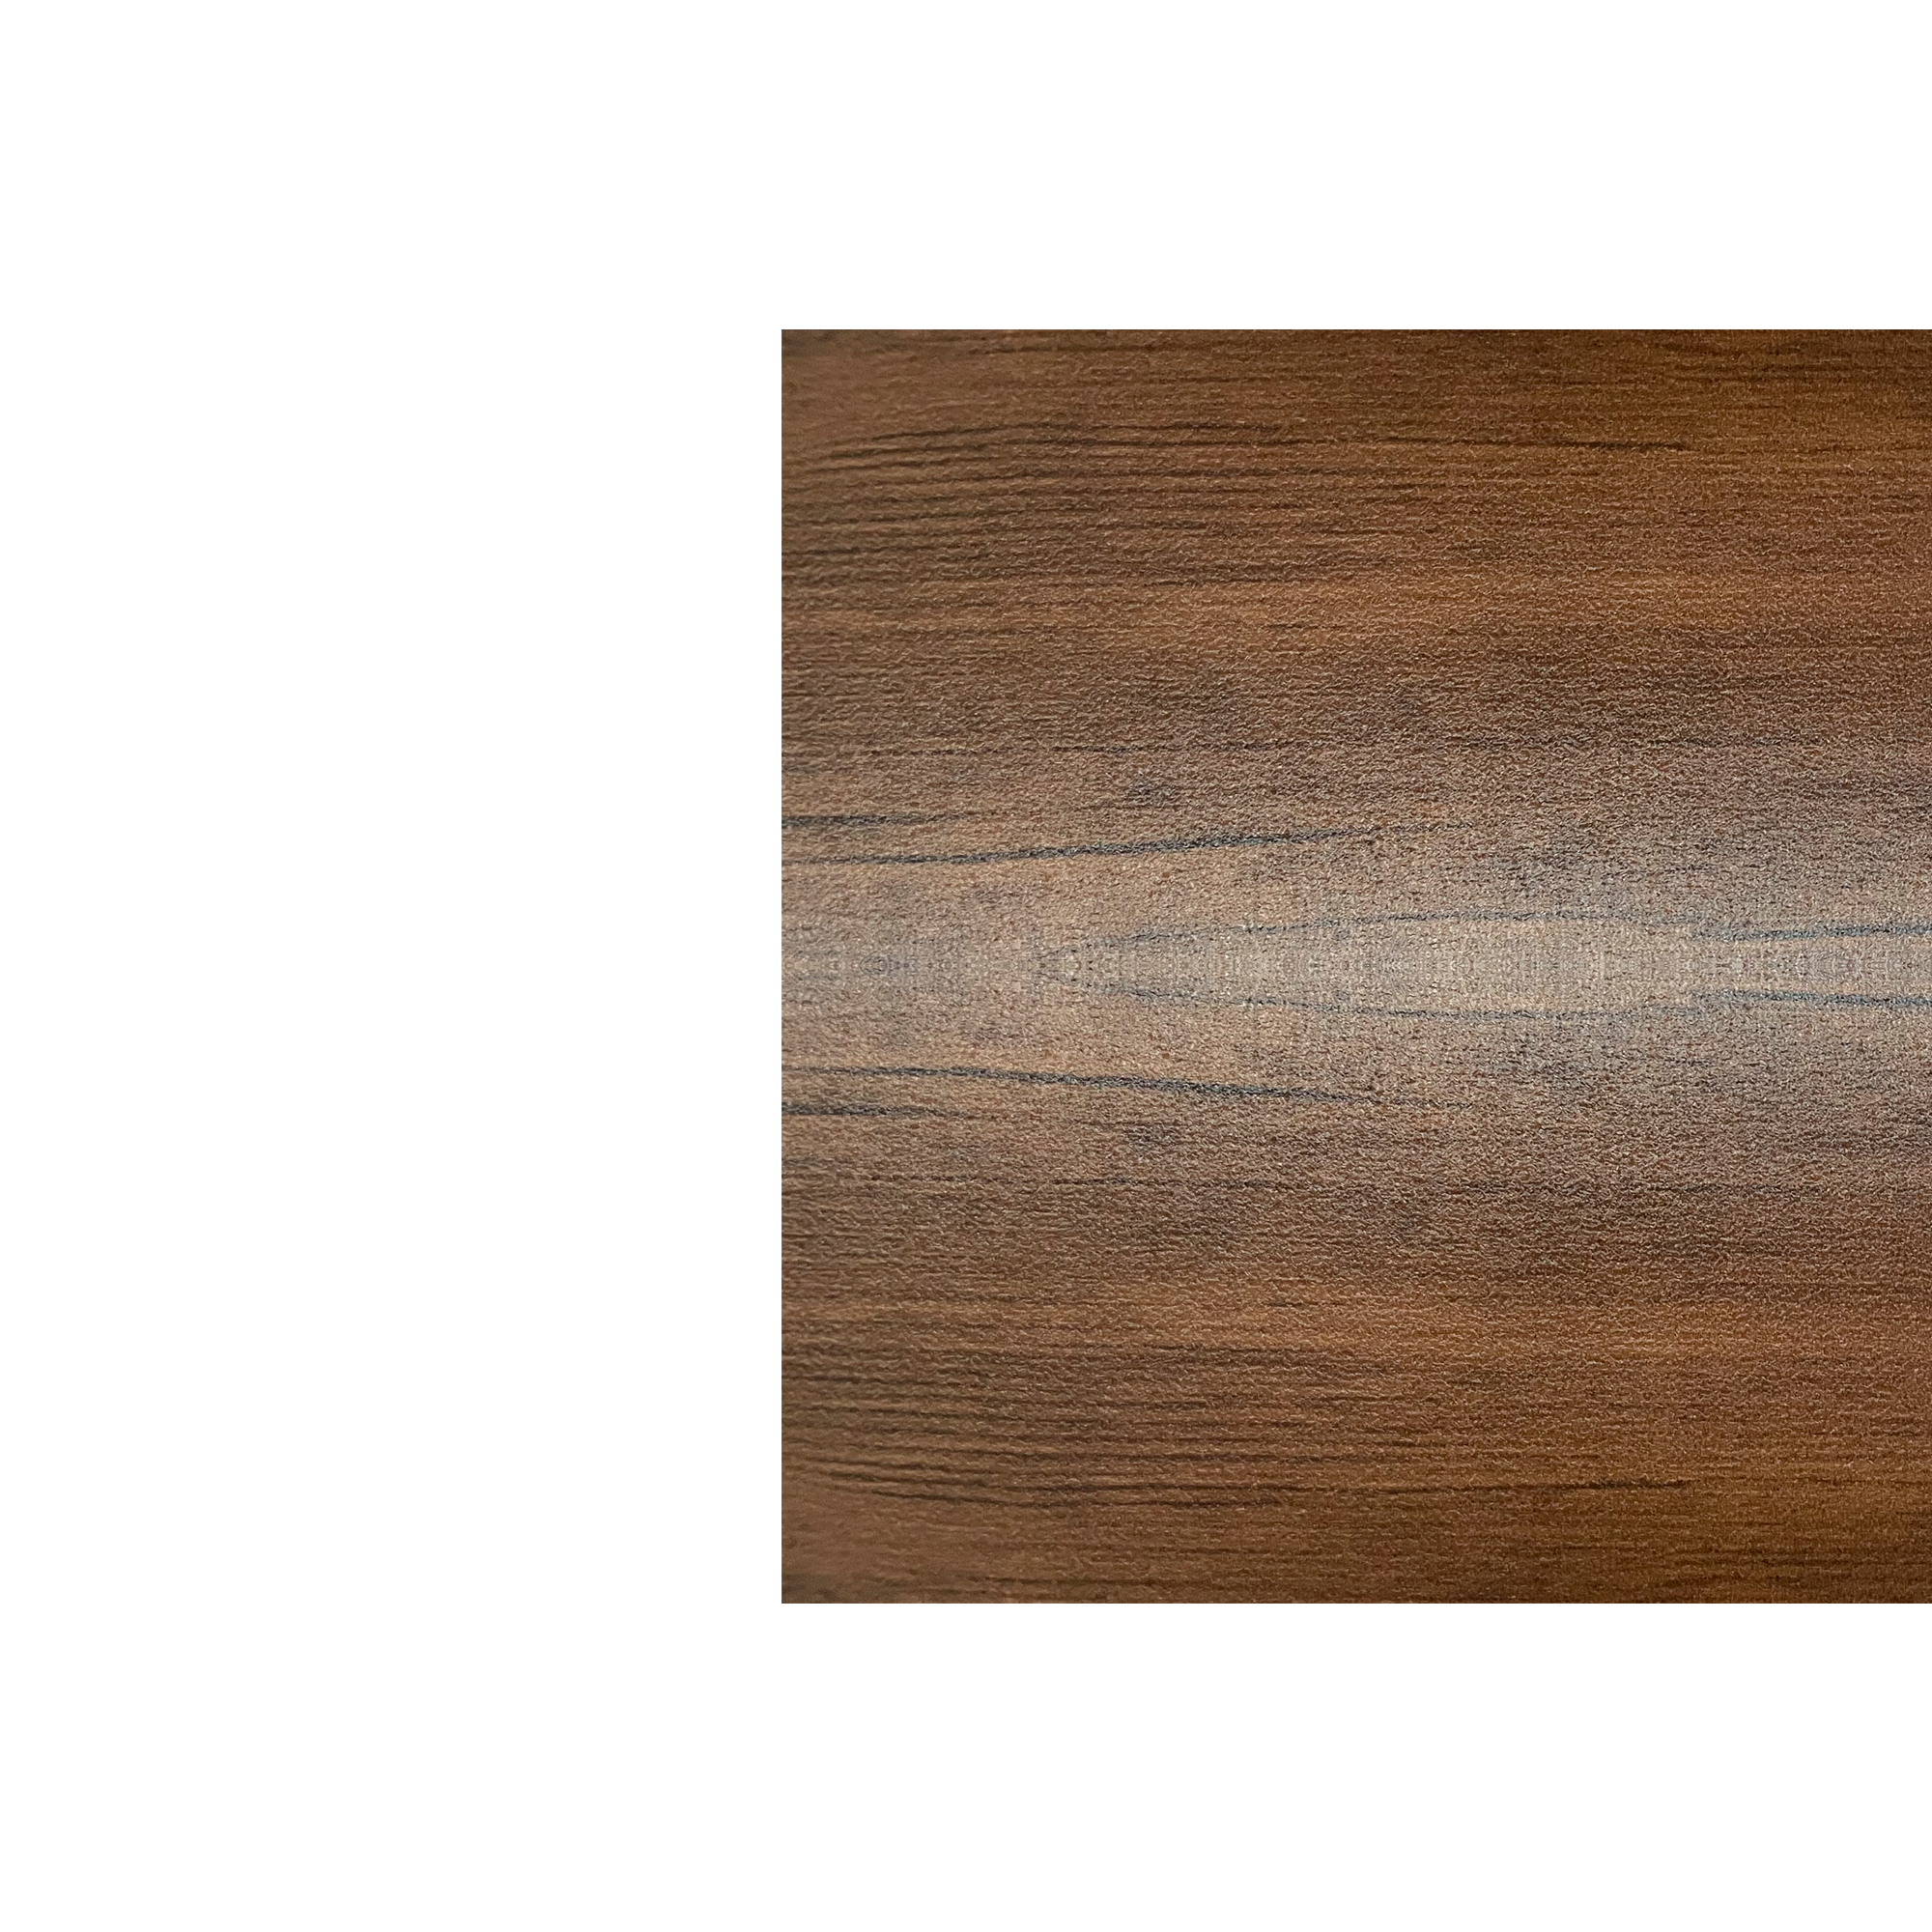 Планка угла наружного сложного Экобрус Античный дуб 0,45 мм Printech Доборные элементы для сайдинга Кровля Сервис